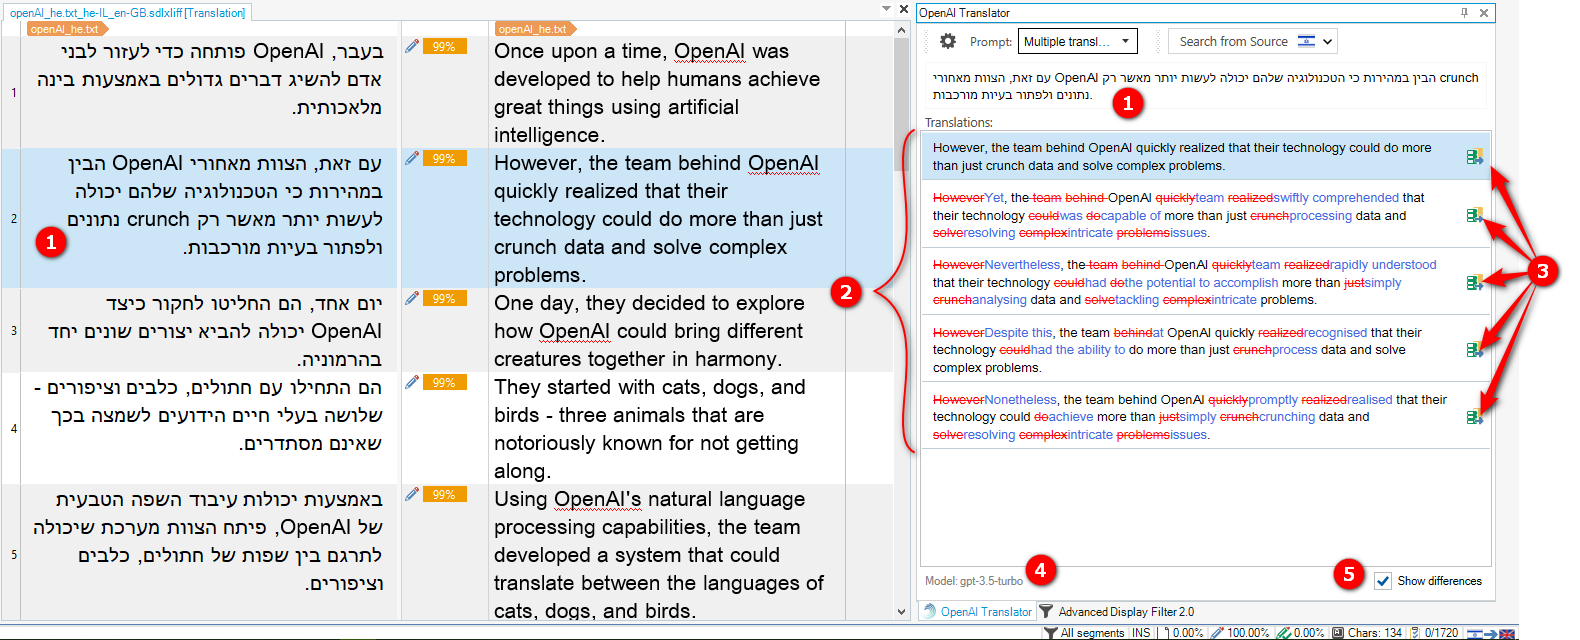 Zrzut ekranu przedstawiający pięć tłumaczeń tekstu źródłowego, z numerowanymi adnotacjami odnoszącymi się do informacji na ekranie i wyjaśnionymi poniżej.